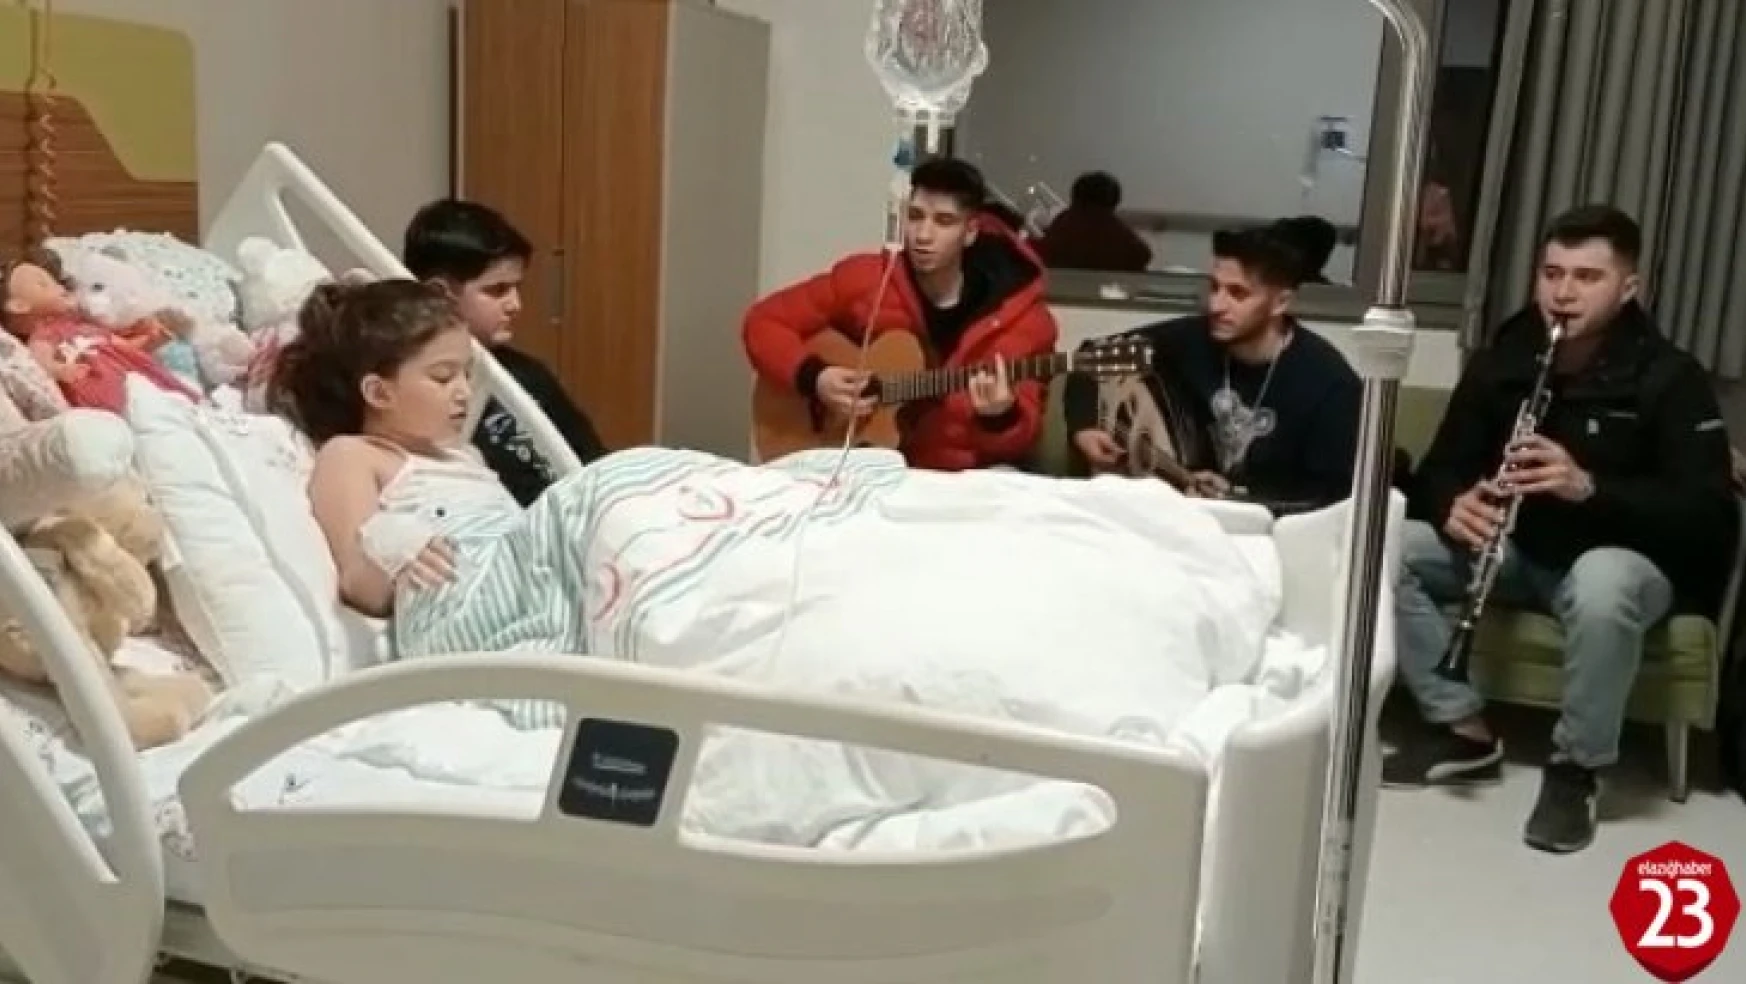 40 saat sonra enkazdan çıkartılan minik Yağmur'a hastanede mini konser